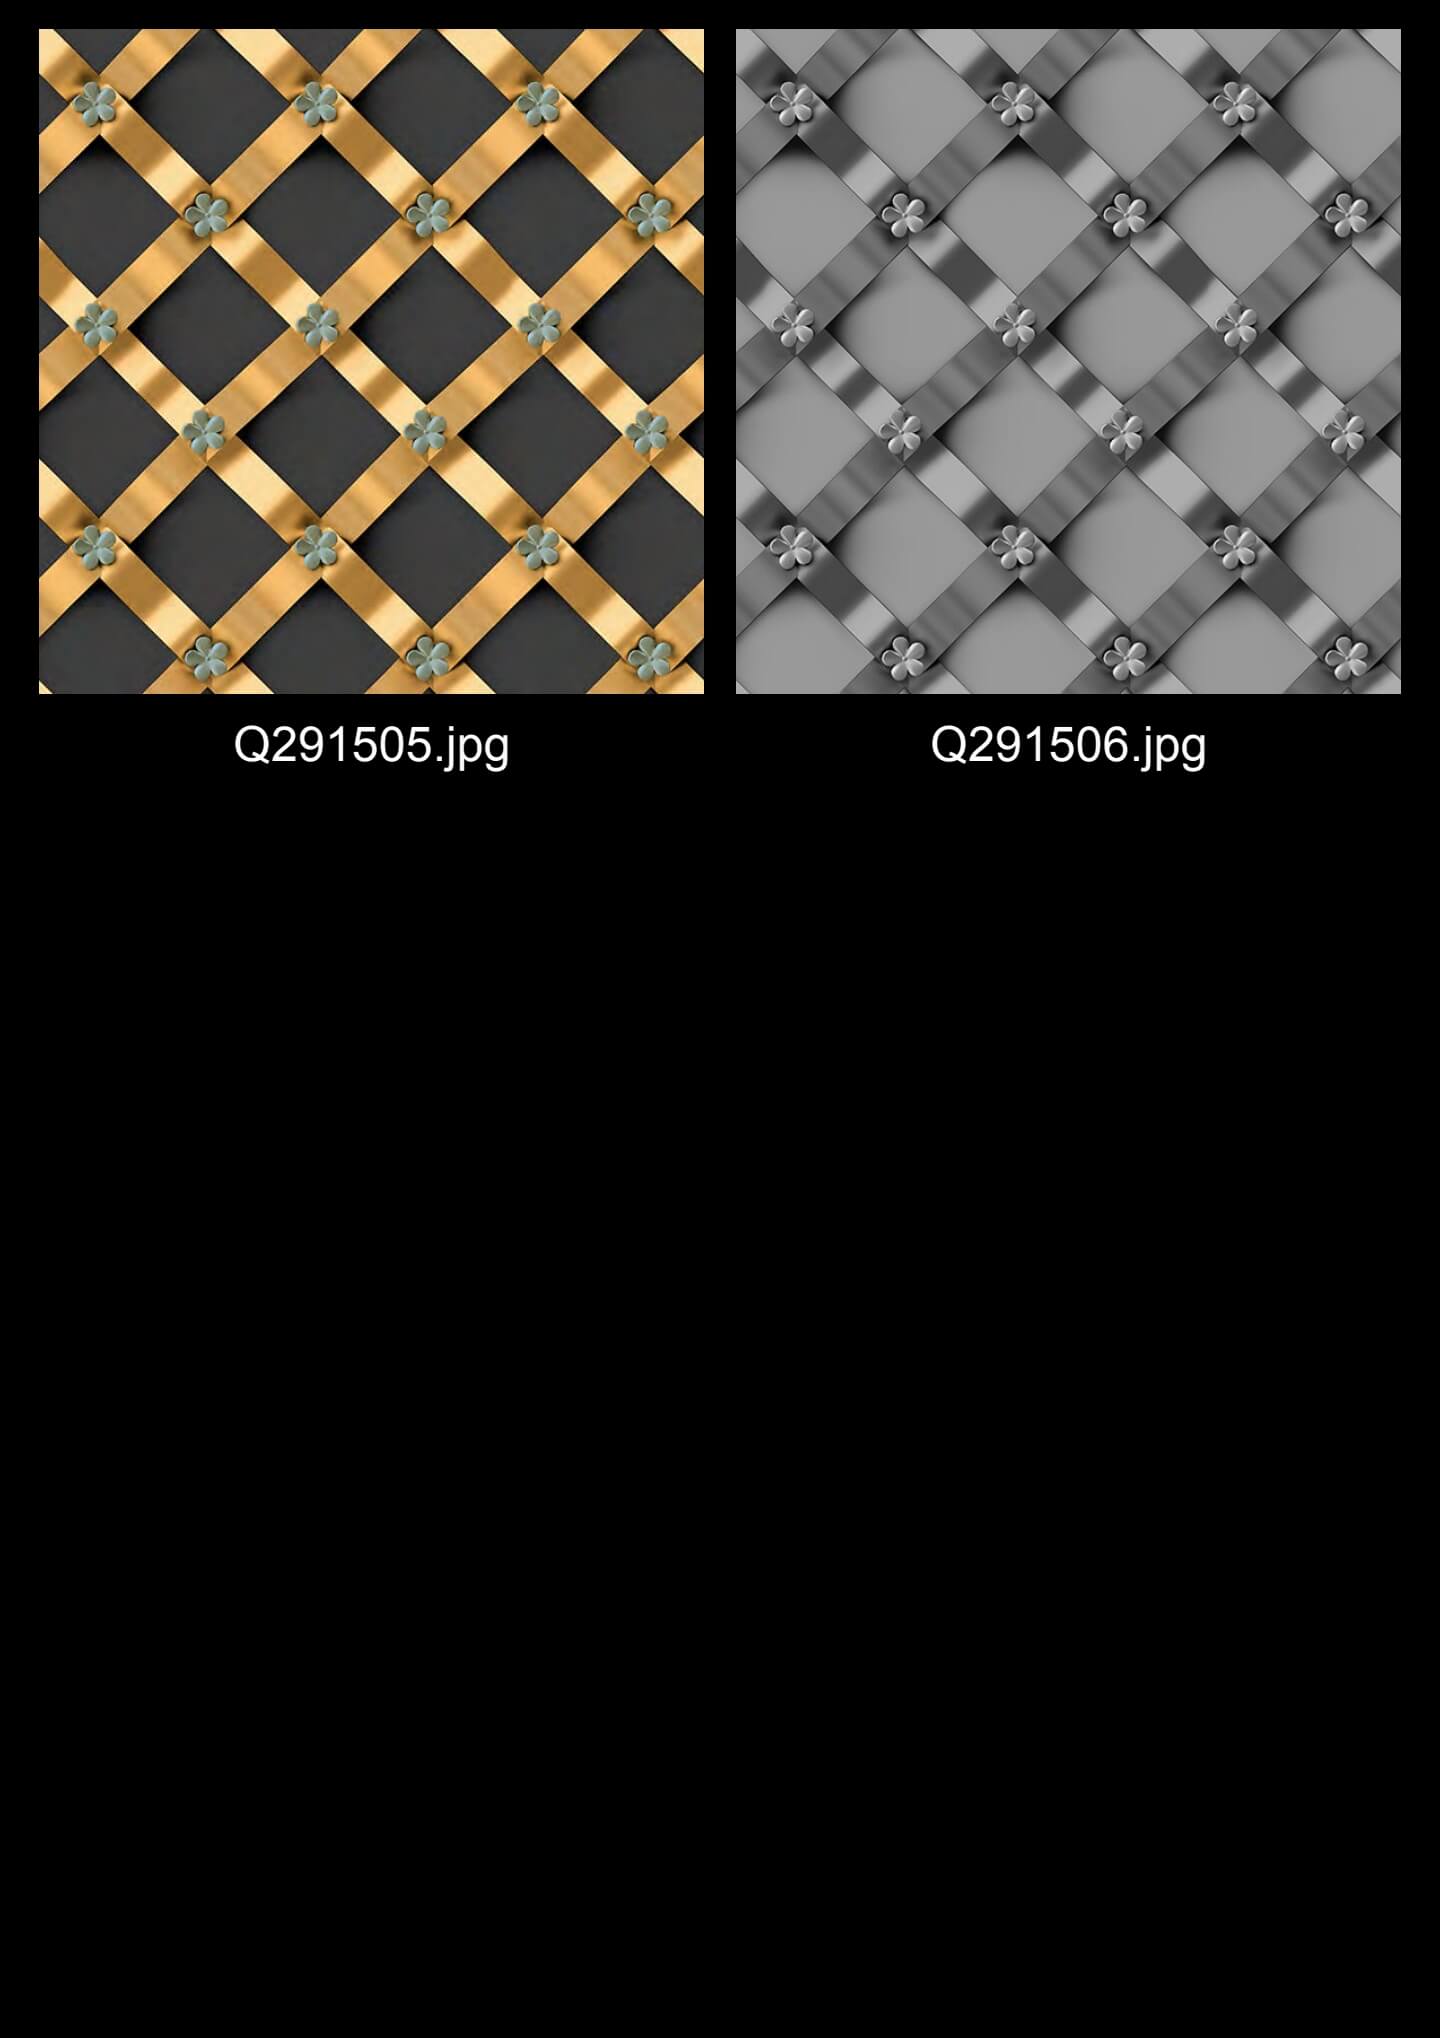 3D Geometric Graphic Wallpaper in BlueTealBeige (11)